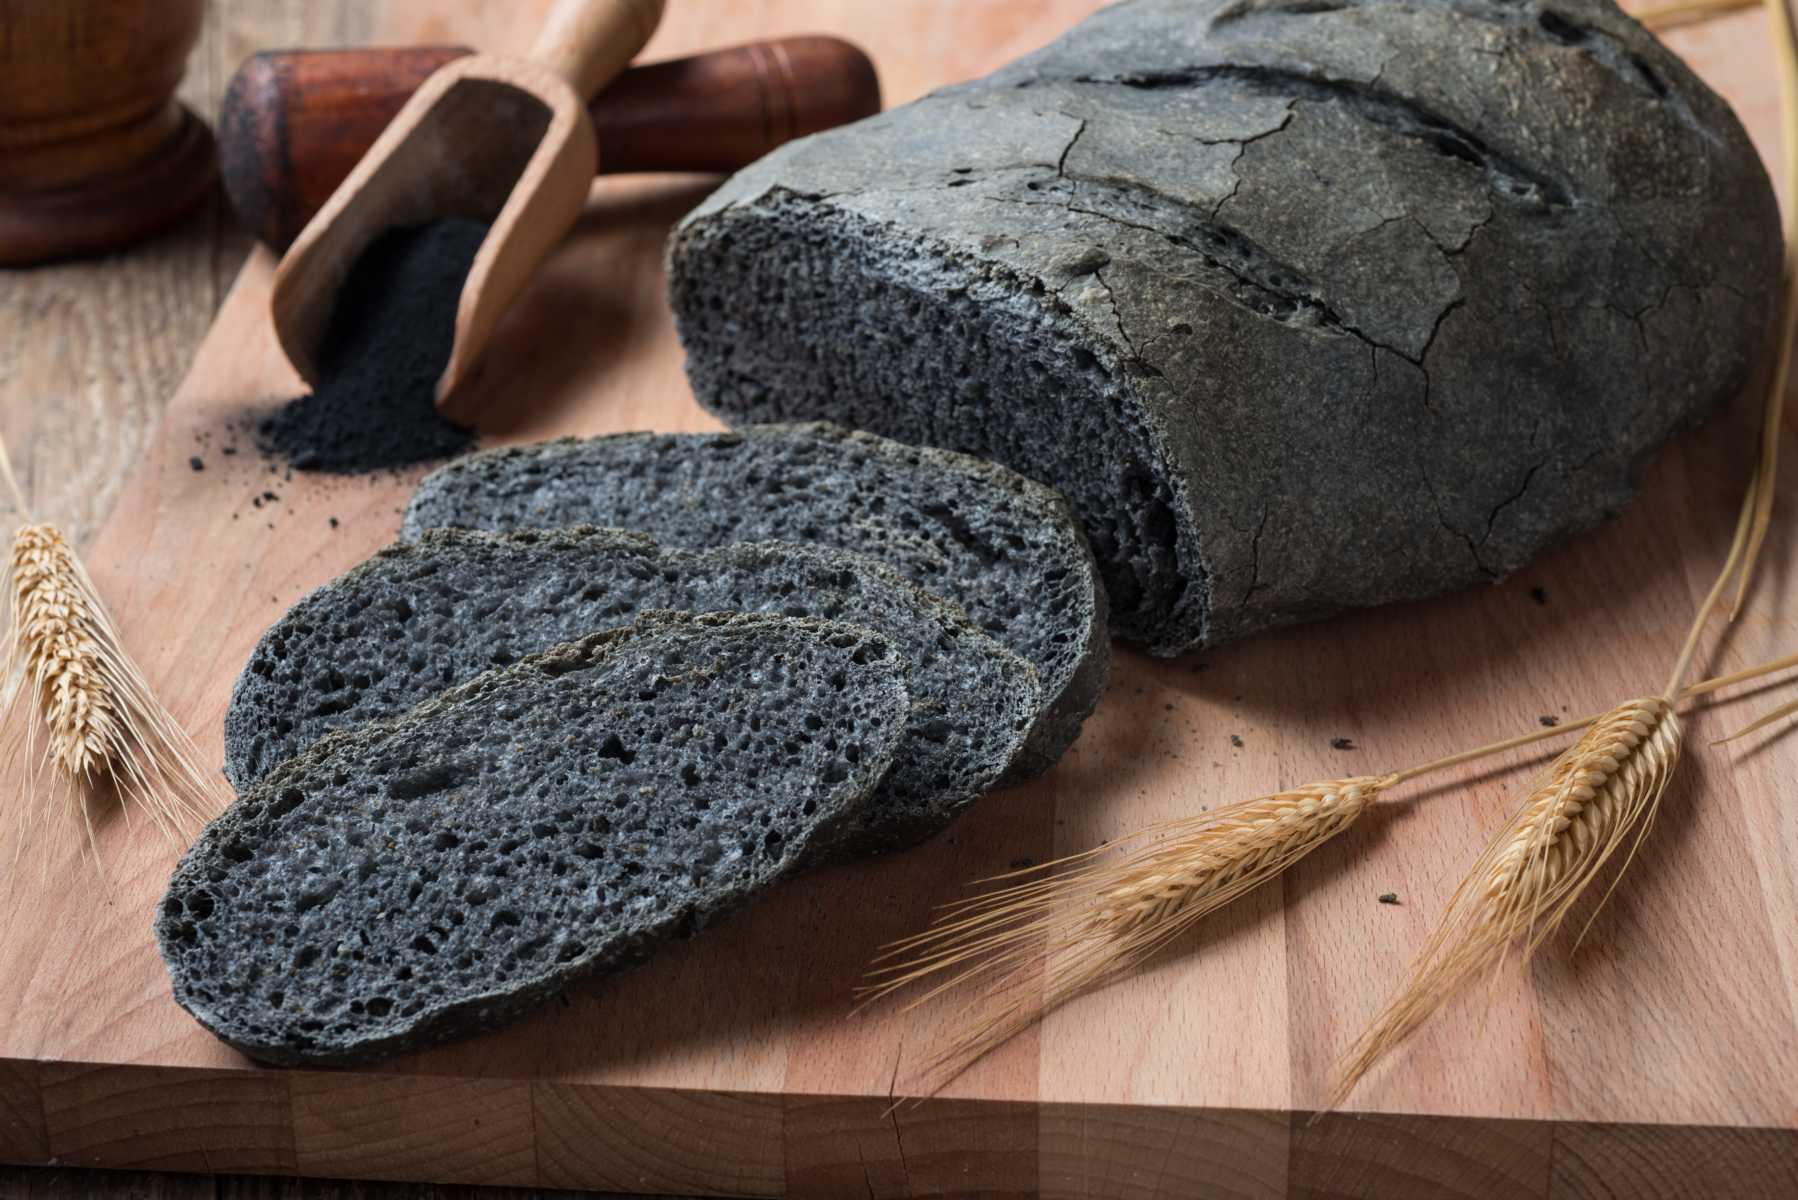 Ein schwarzes Brot, es ist schwarz weil es mit Aktivkohle gebacken wurde. Das Bild ist ein Teil des Acala Blogbeitrages:  Aktivkohle, Anwendung und Hintergründe